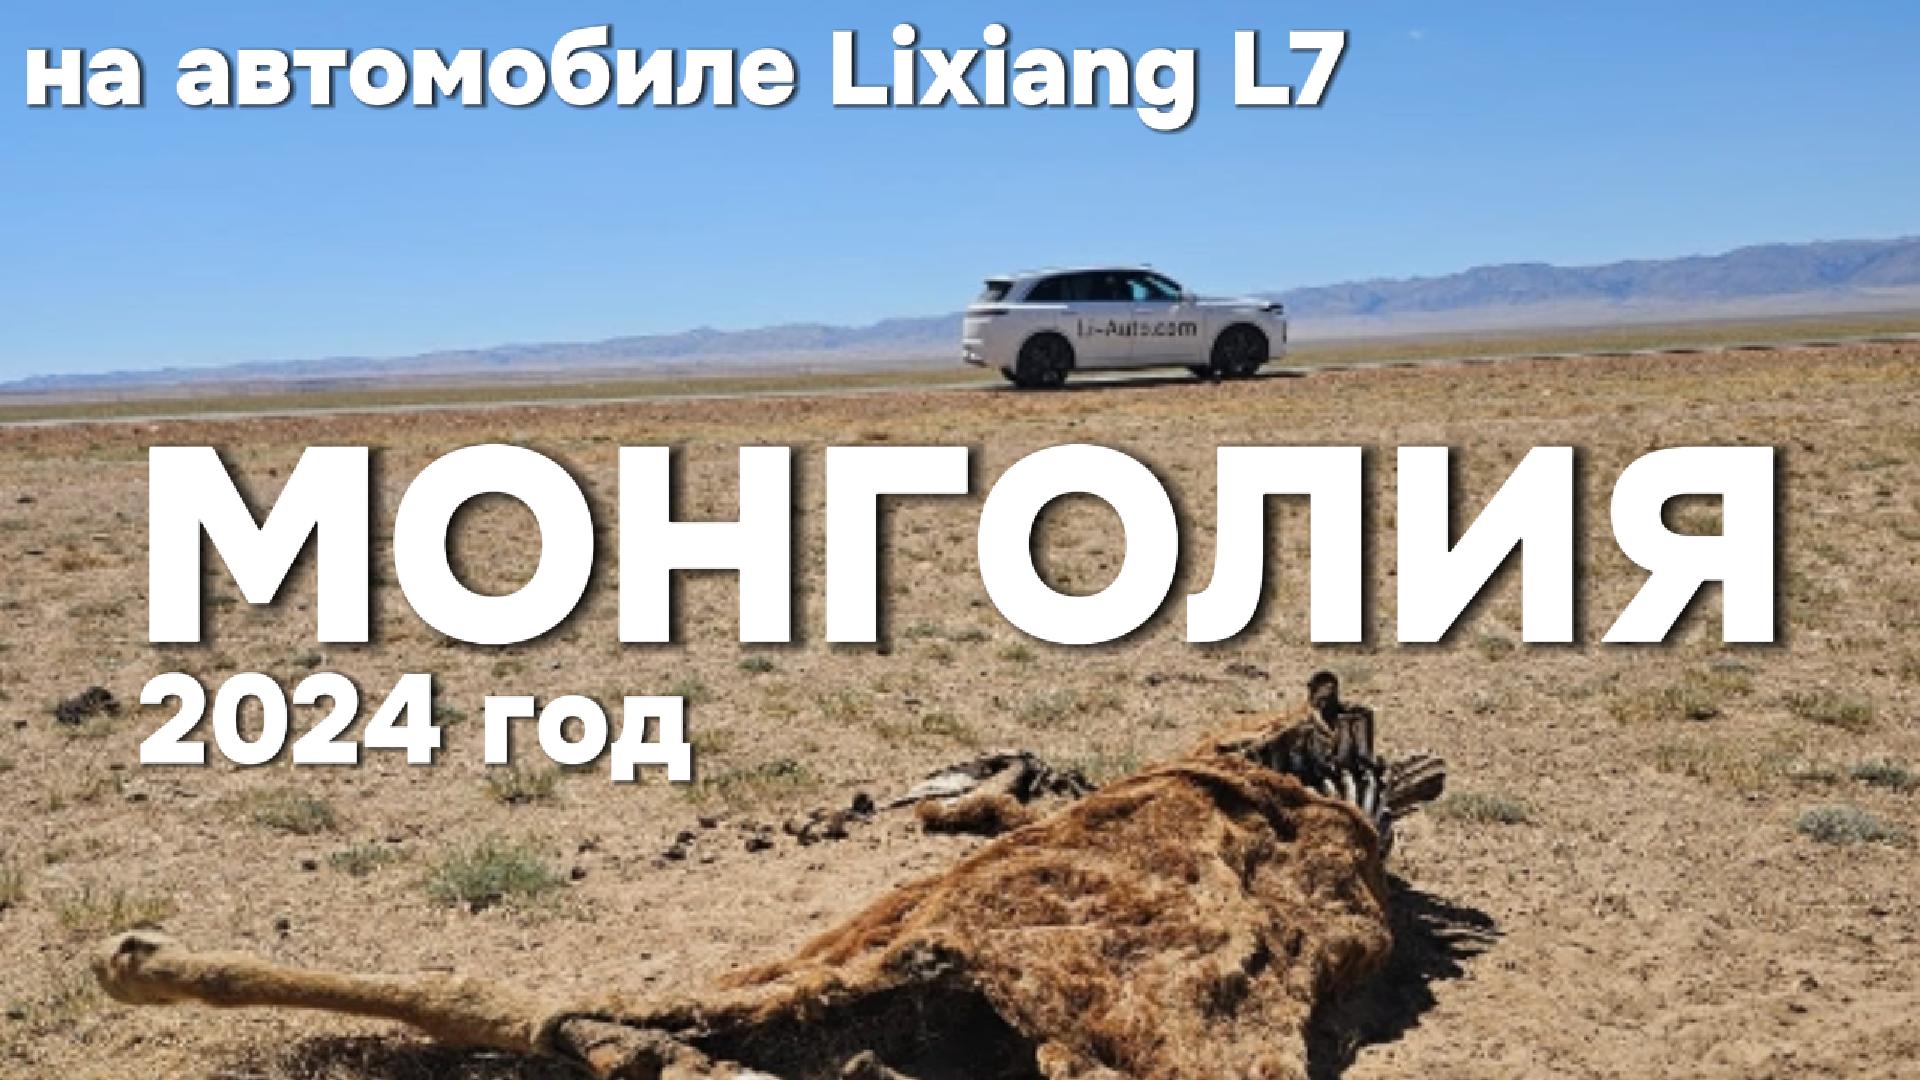 Монголия на автомобиле Lixiang L7 в 2024 году